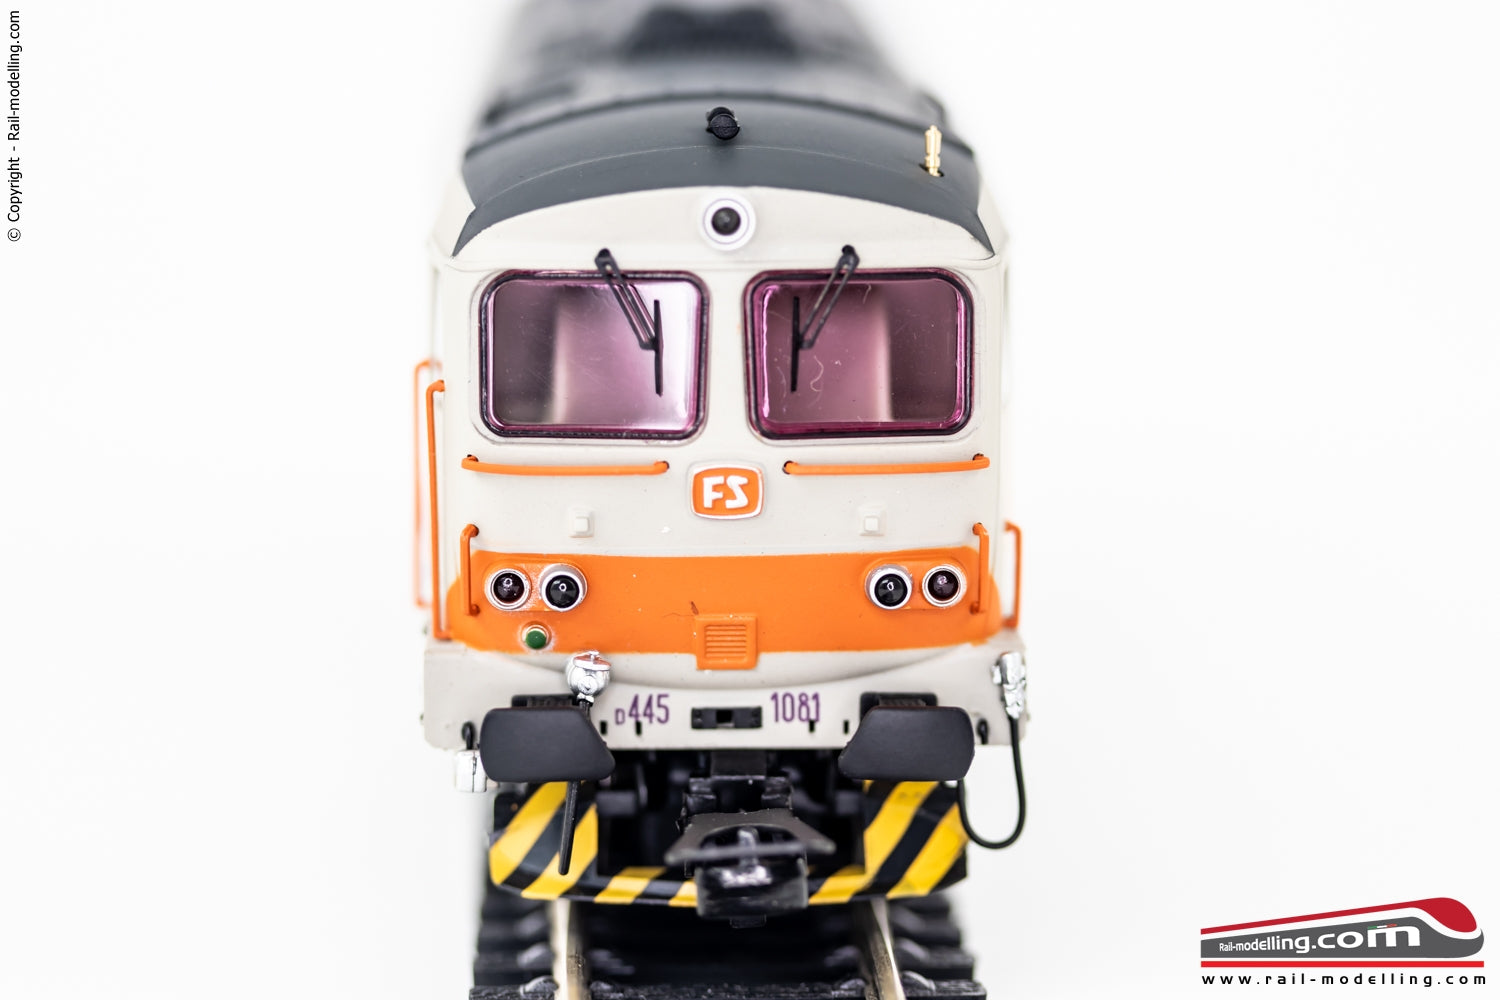 LIMA EXPERT HL2651 - H0 187 - Locomotiva diesel FS D.445 3a serie livrea MDVC Dep. Cremona Ep. V